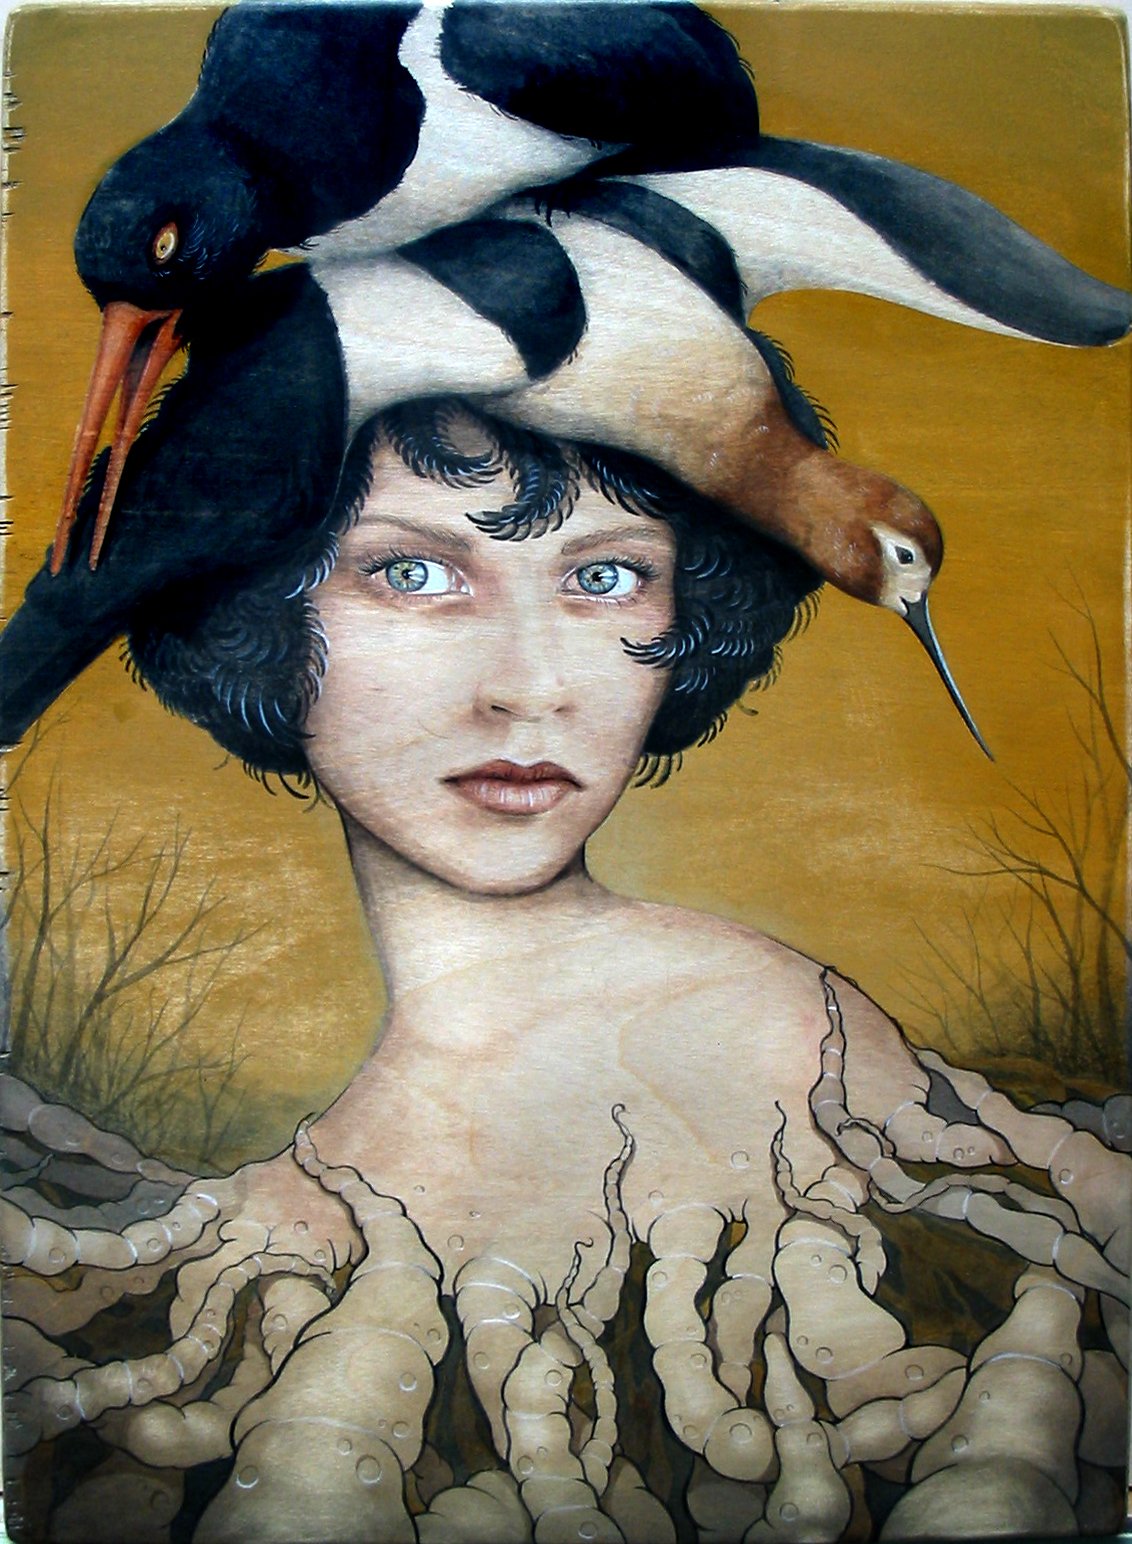 Mother, 12” x 16”, acrylic on maple panel, 2003